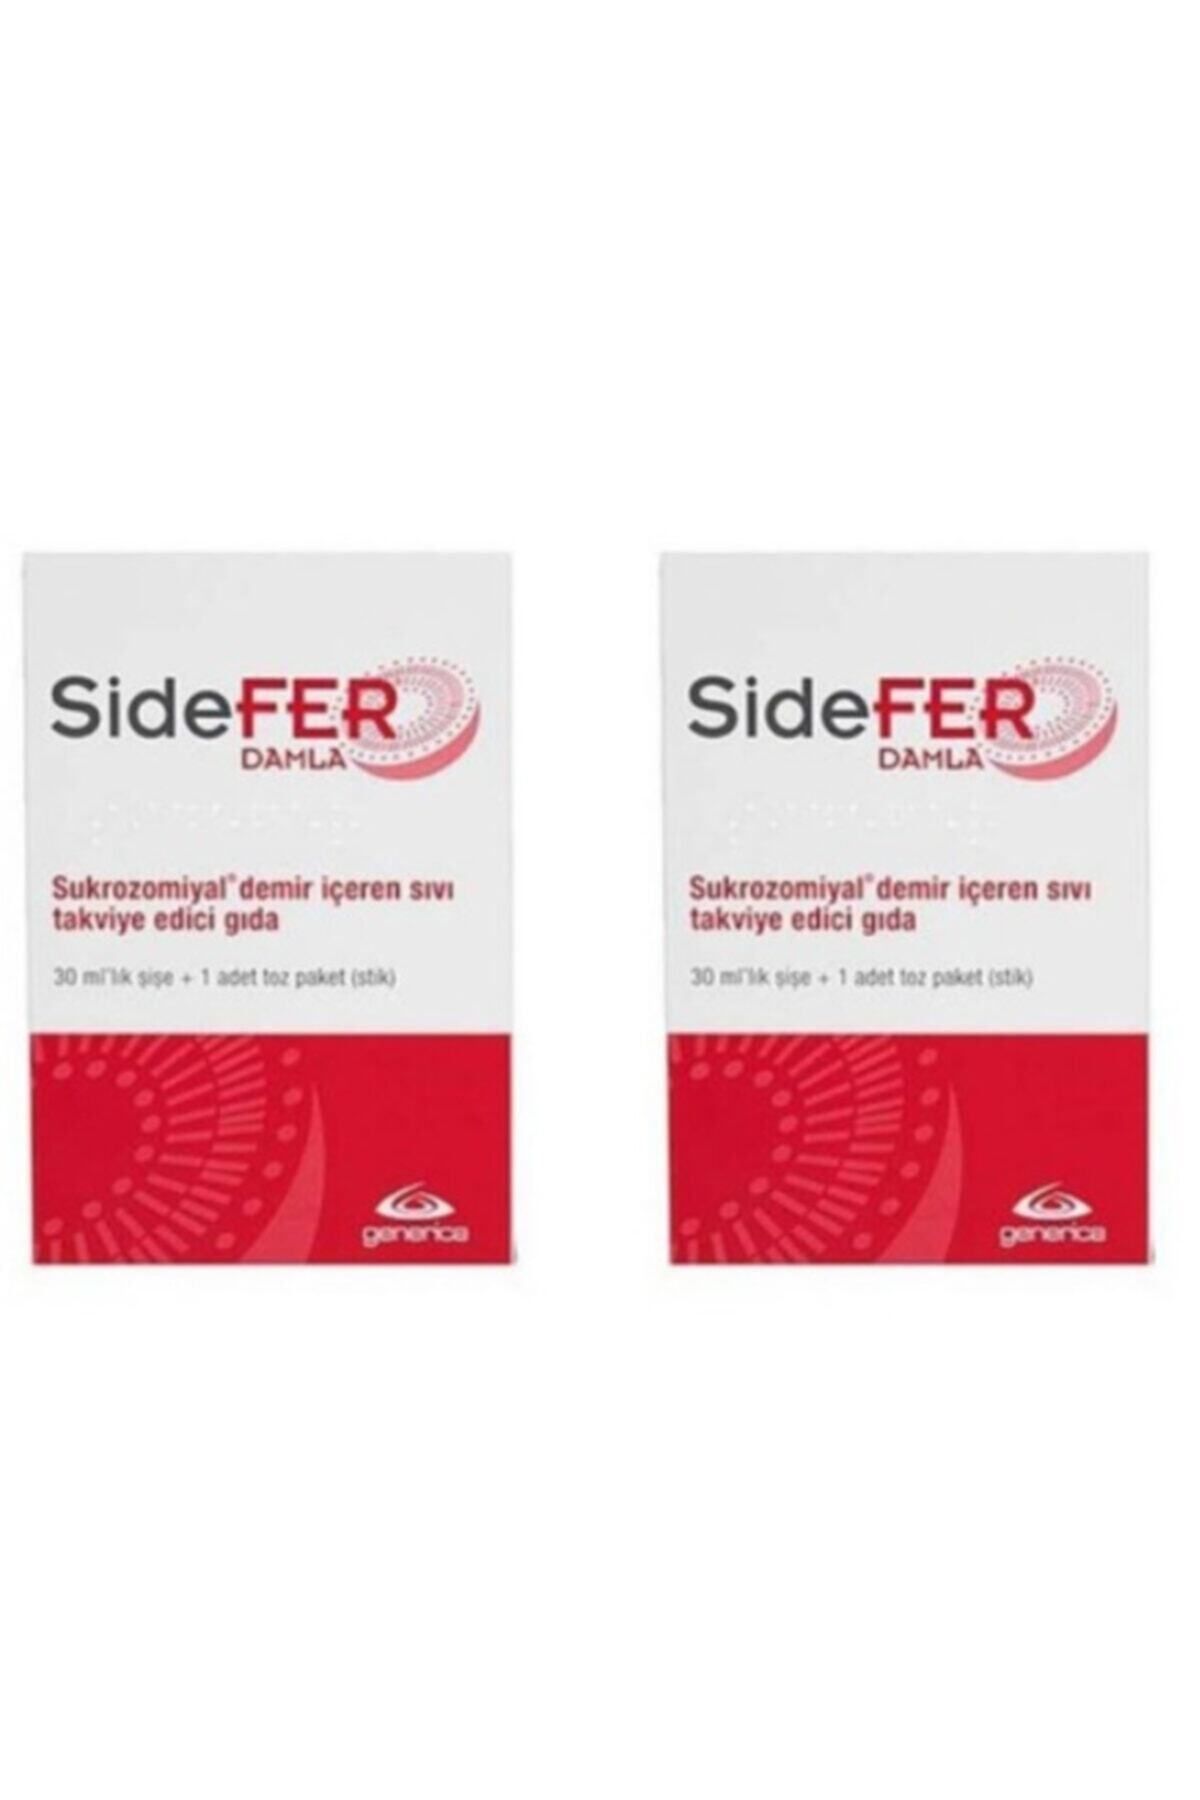 Sidefer Damla Takviye Edici Gıda 30ml Şişe - 2 'li Paket